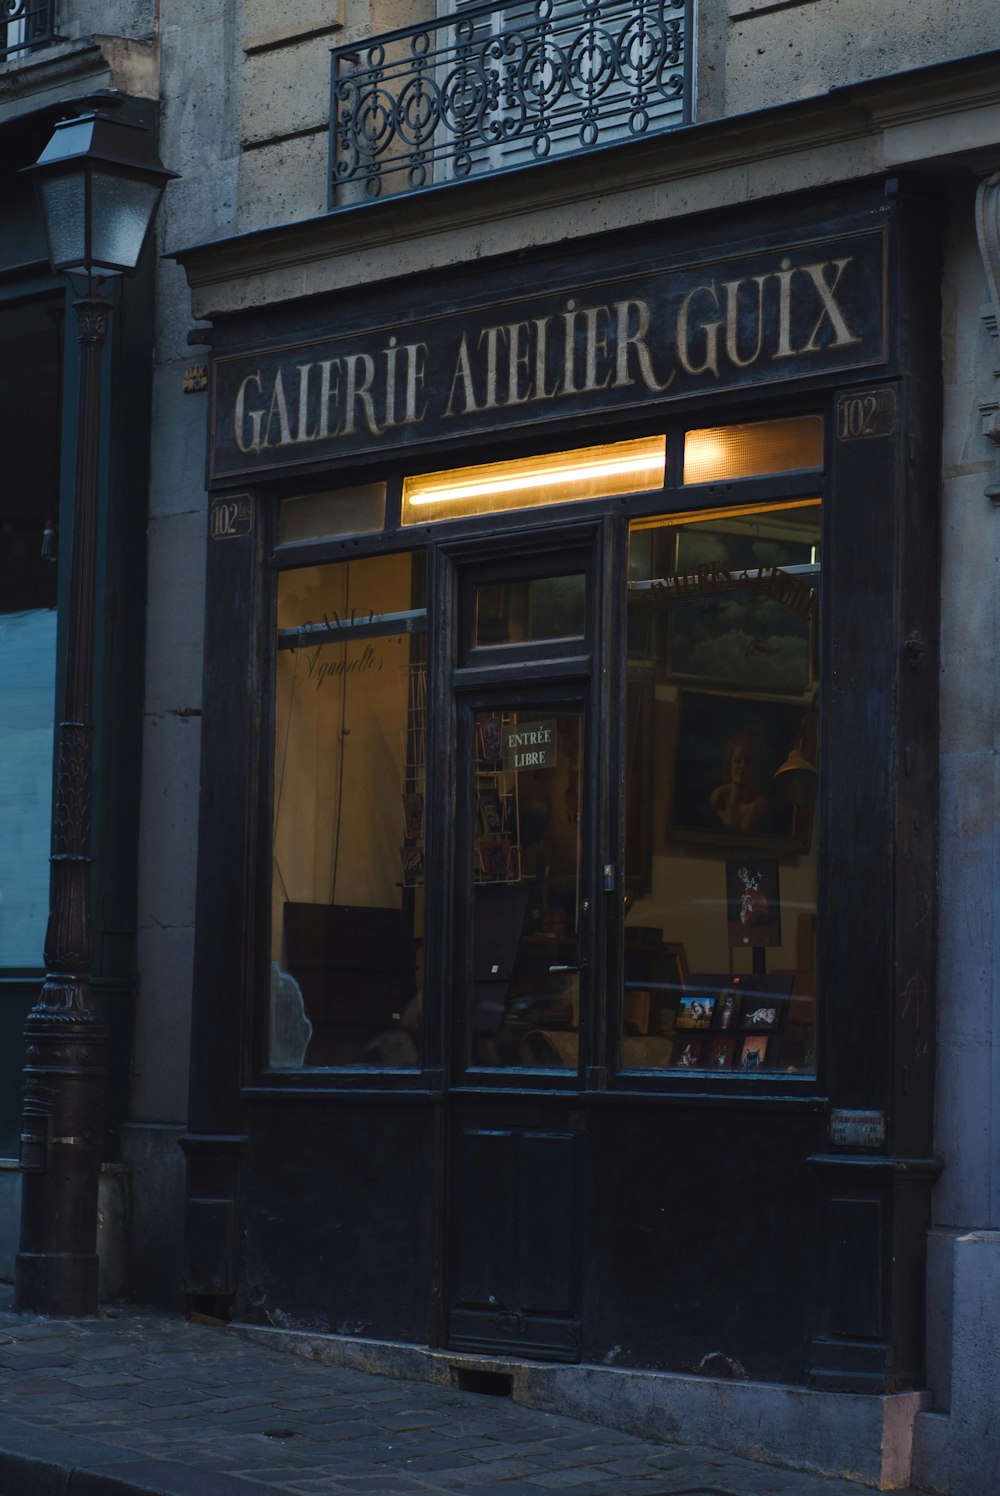 Galerie Atelier Guix shop